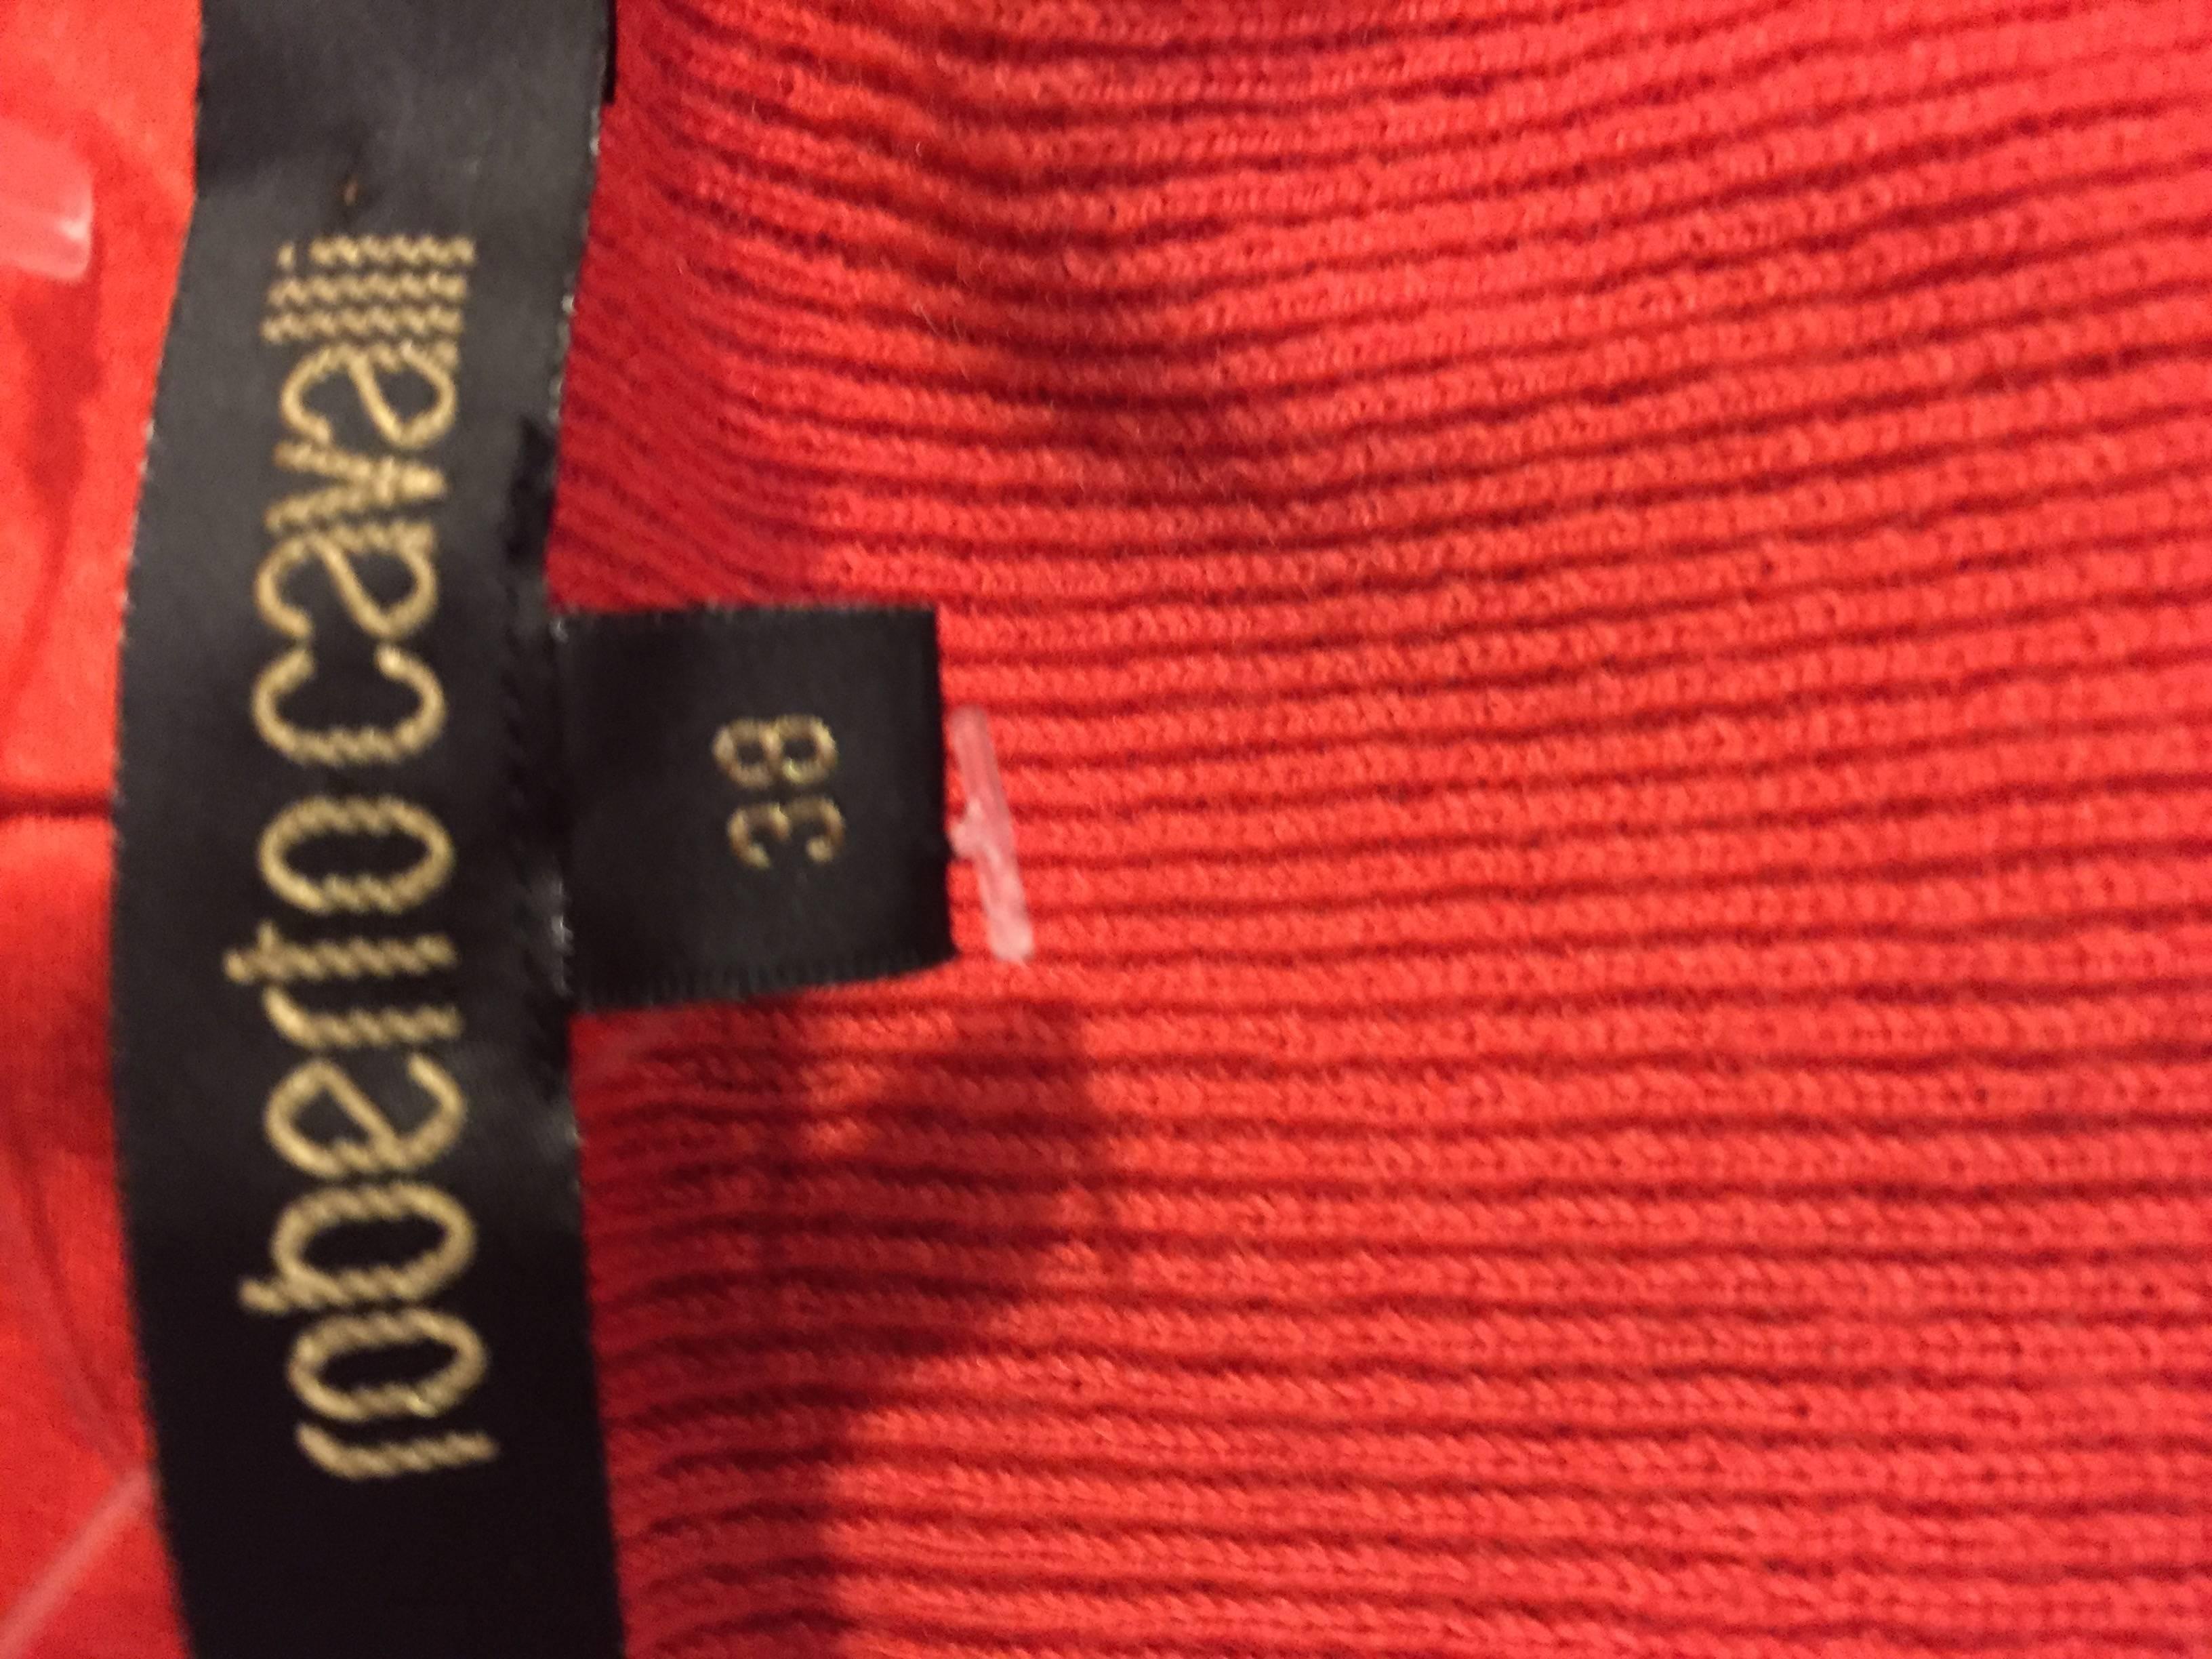 Roberto Cavalli 1990s Burnt Orange Rhinestone + Beaded Vintage Knit Cardigan Top 5